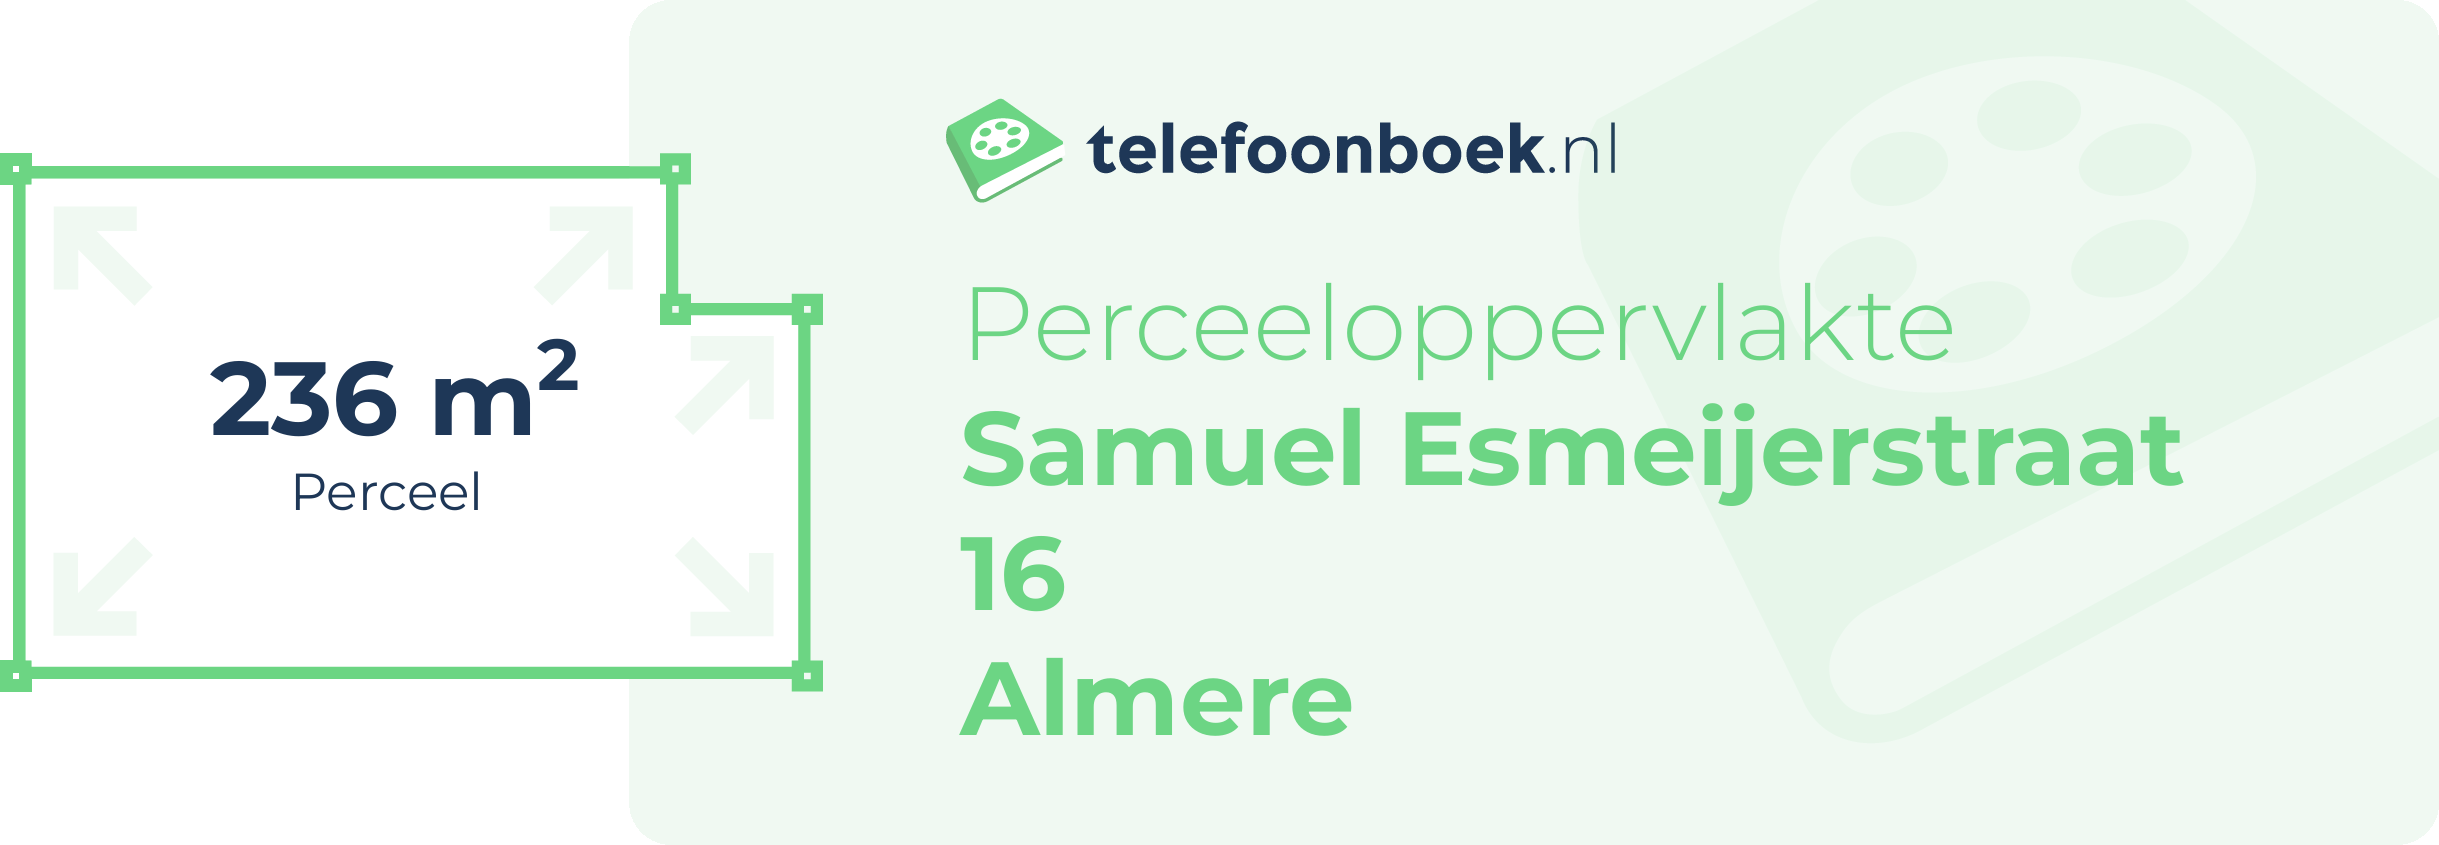 Perceeloppervlakte Samuel Esmeijerstraat 16 Almere